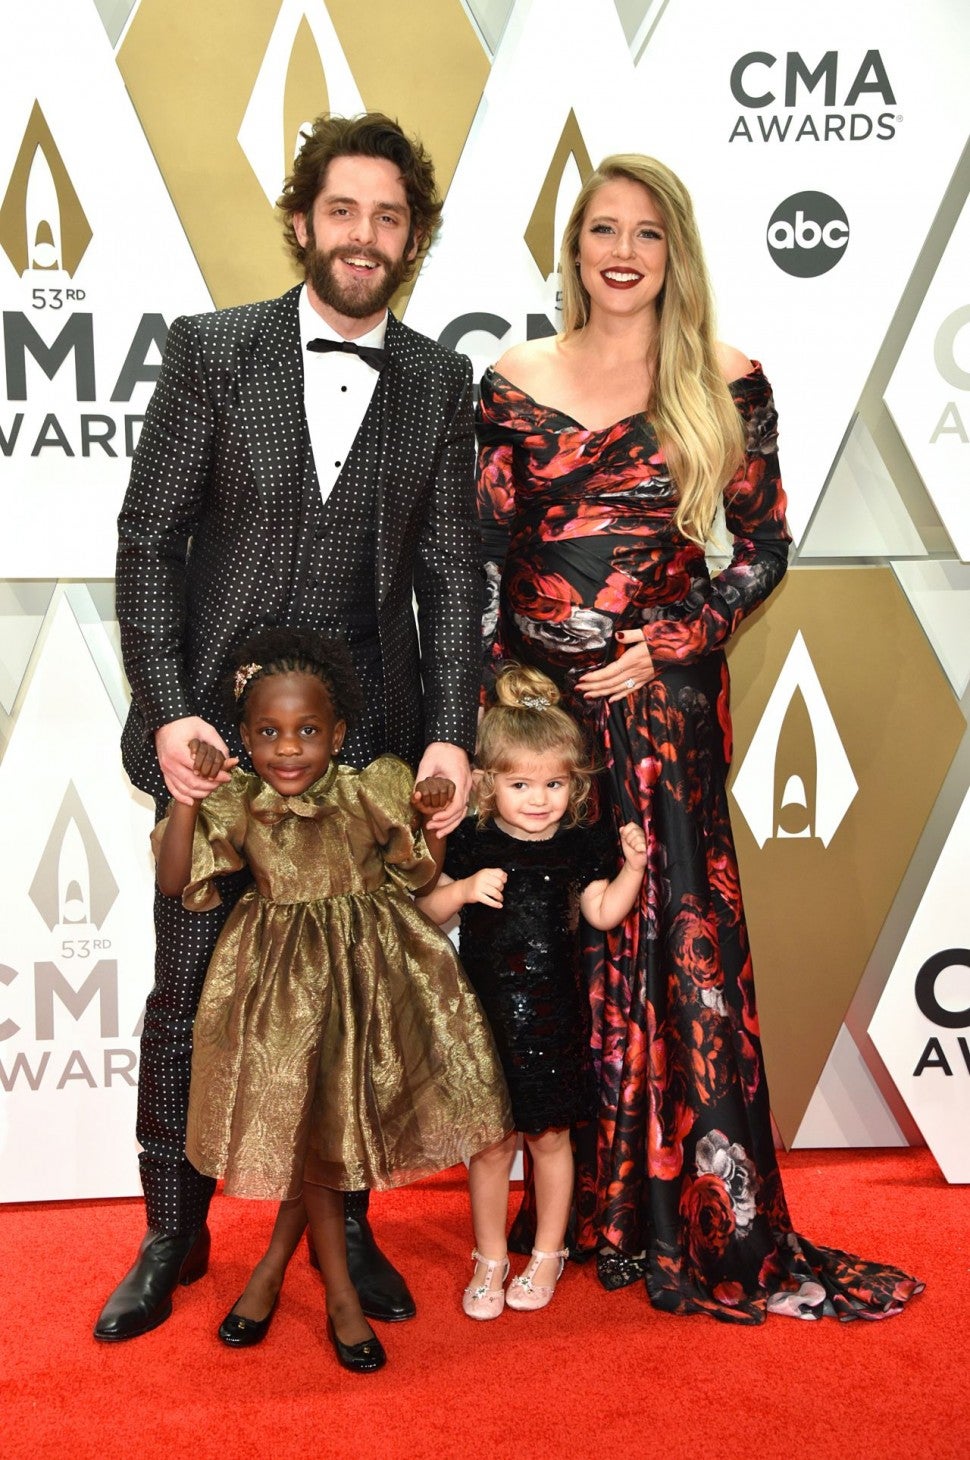 Thomas Rhett and family at CMA Awards